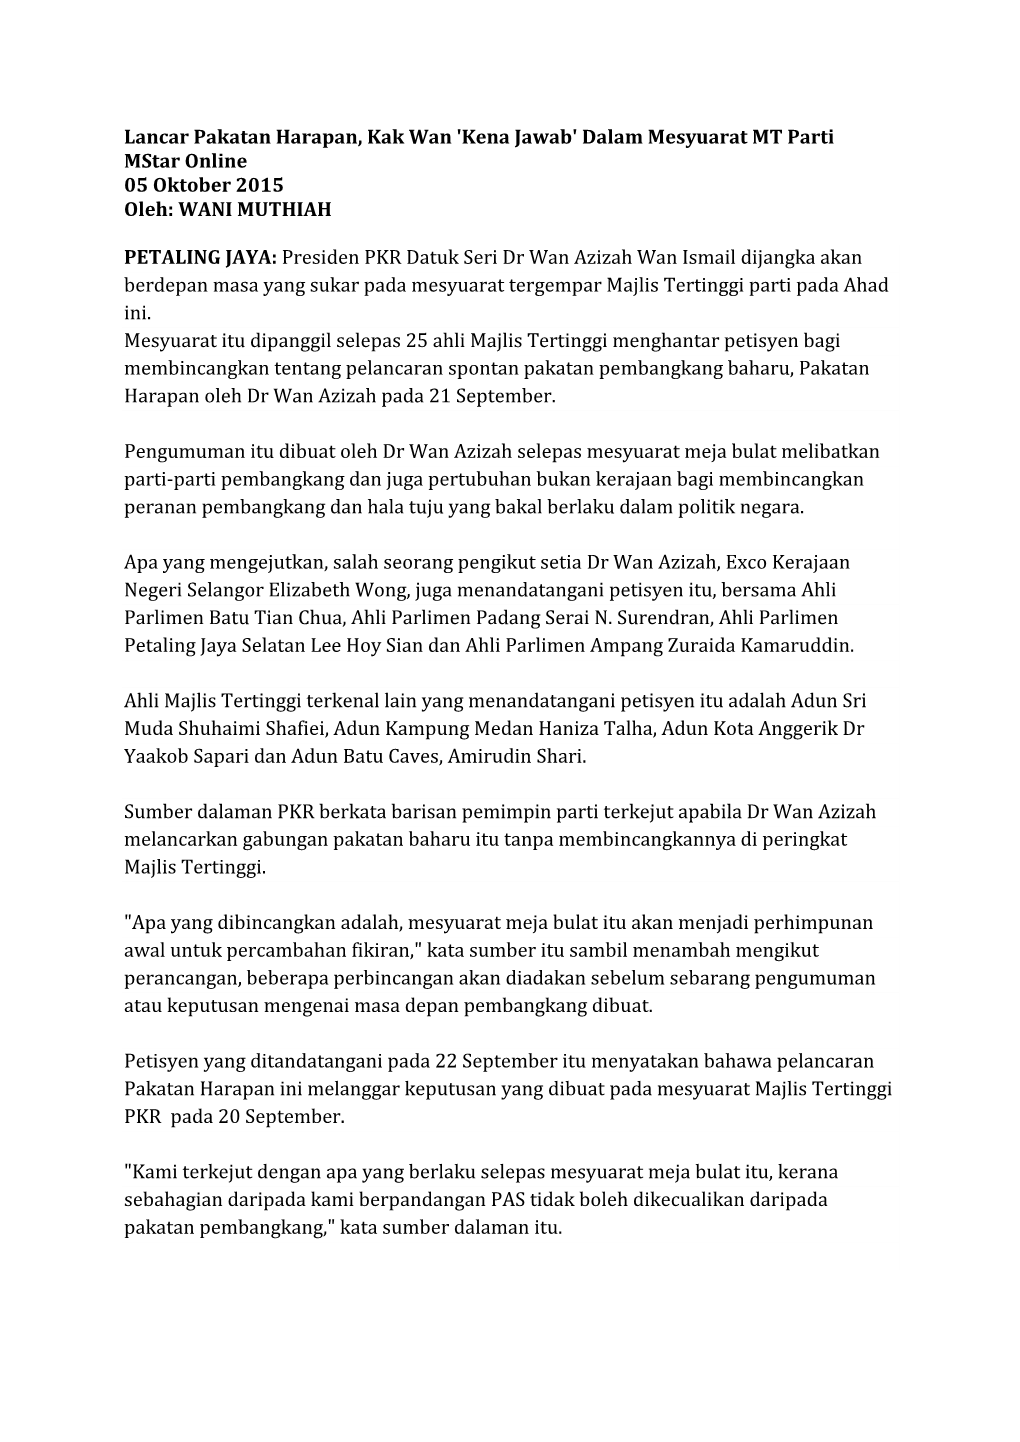 Lancar Pakatan Harapan, Kak Wan 'Kena Jawab' Dalam Mesyuarat MT Parti Mstar Online 05 Oktober 2015 Oleh: WANI MUTHIAH